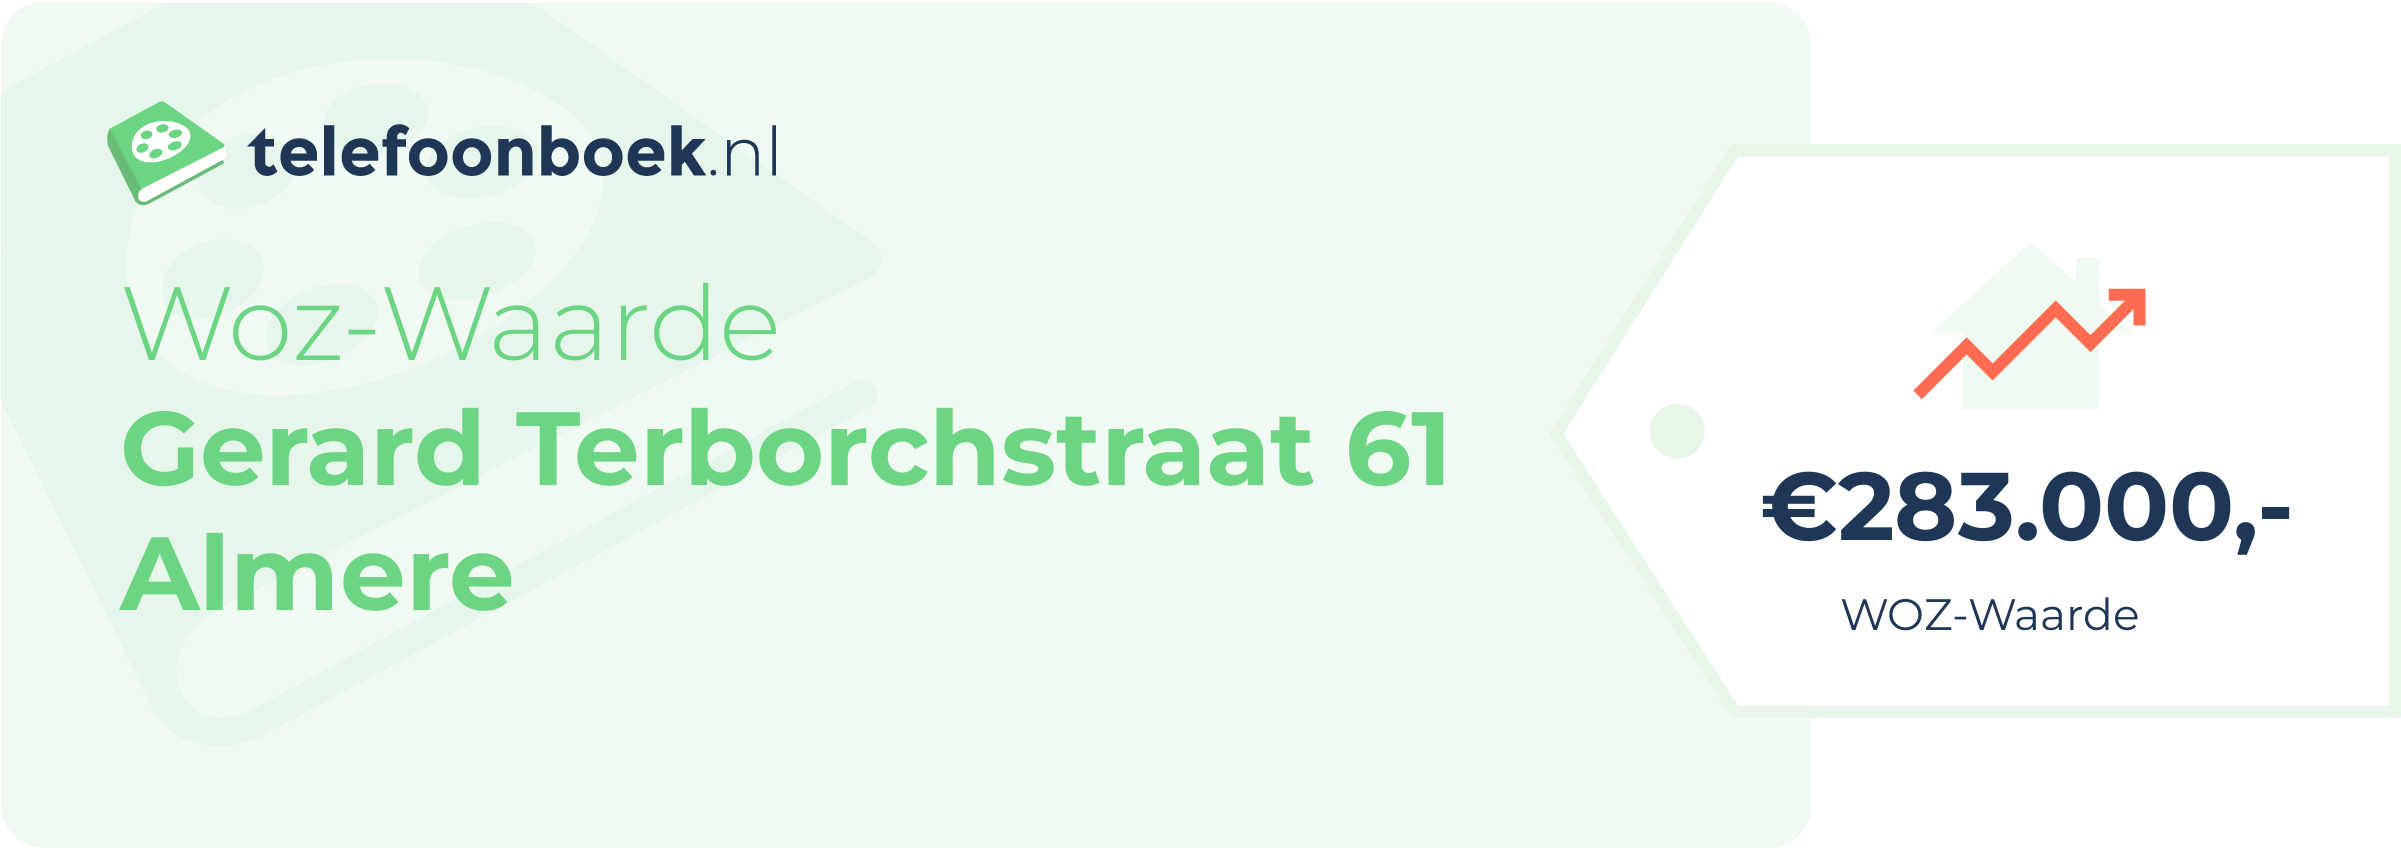 WOZ-waarde Gerard Terborchstraat 61 Almere